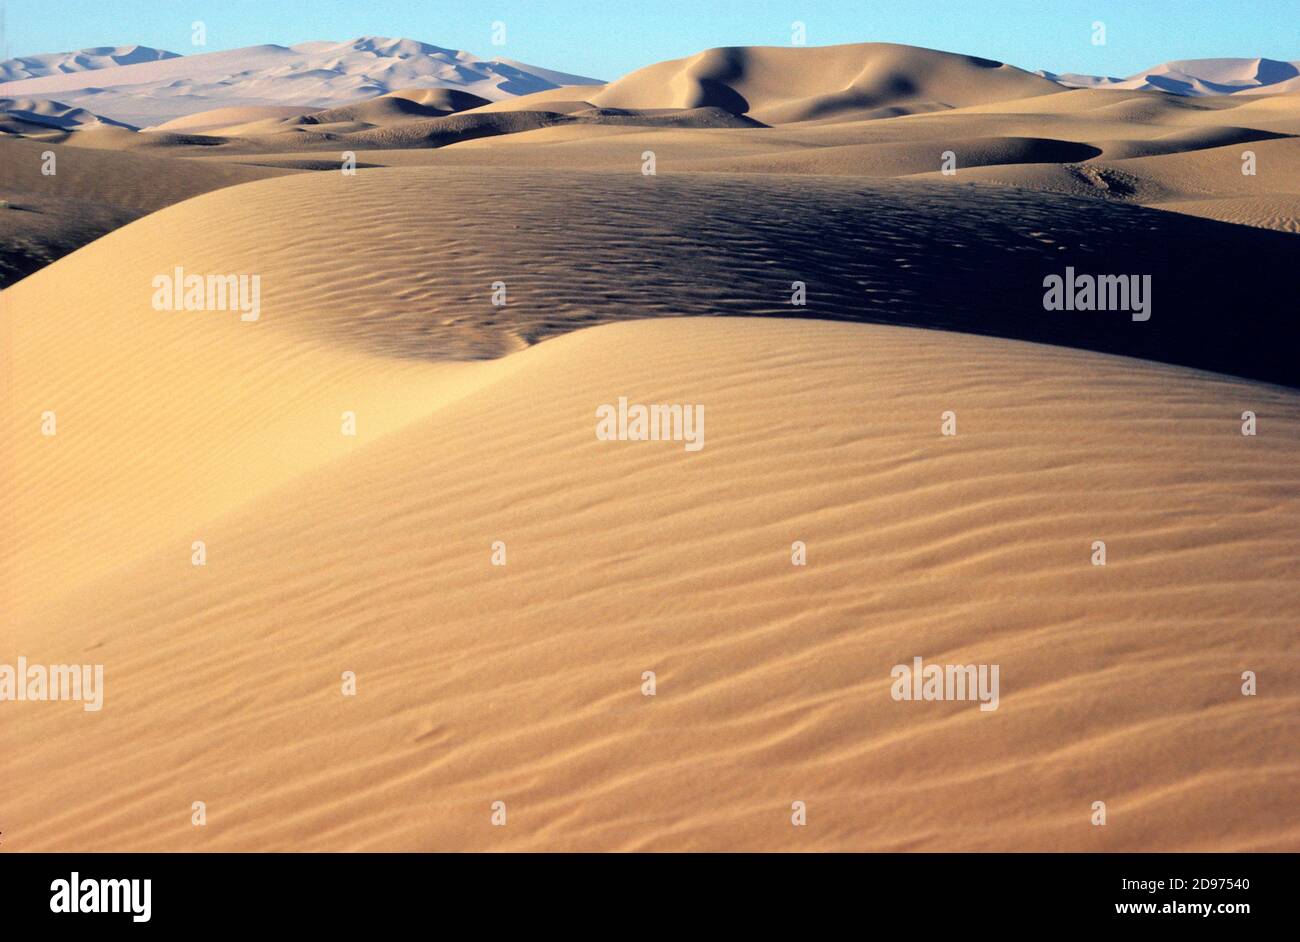 Desert landscape. Sand dunes in the Algerian Sahara. Africa Stock Photo